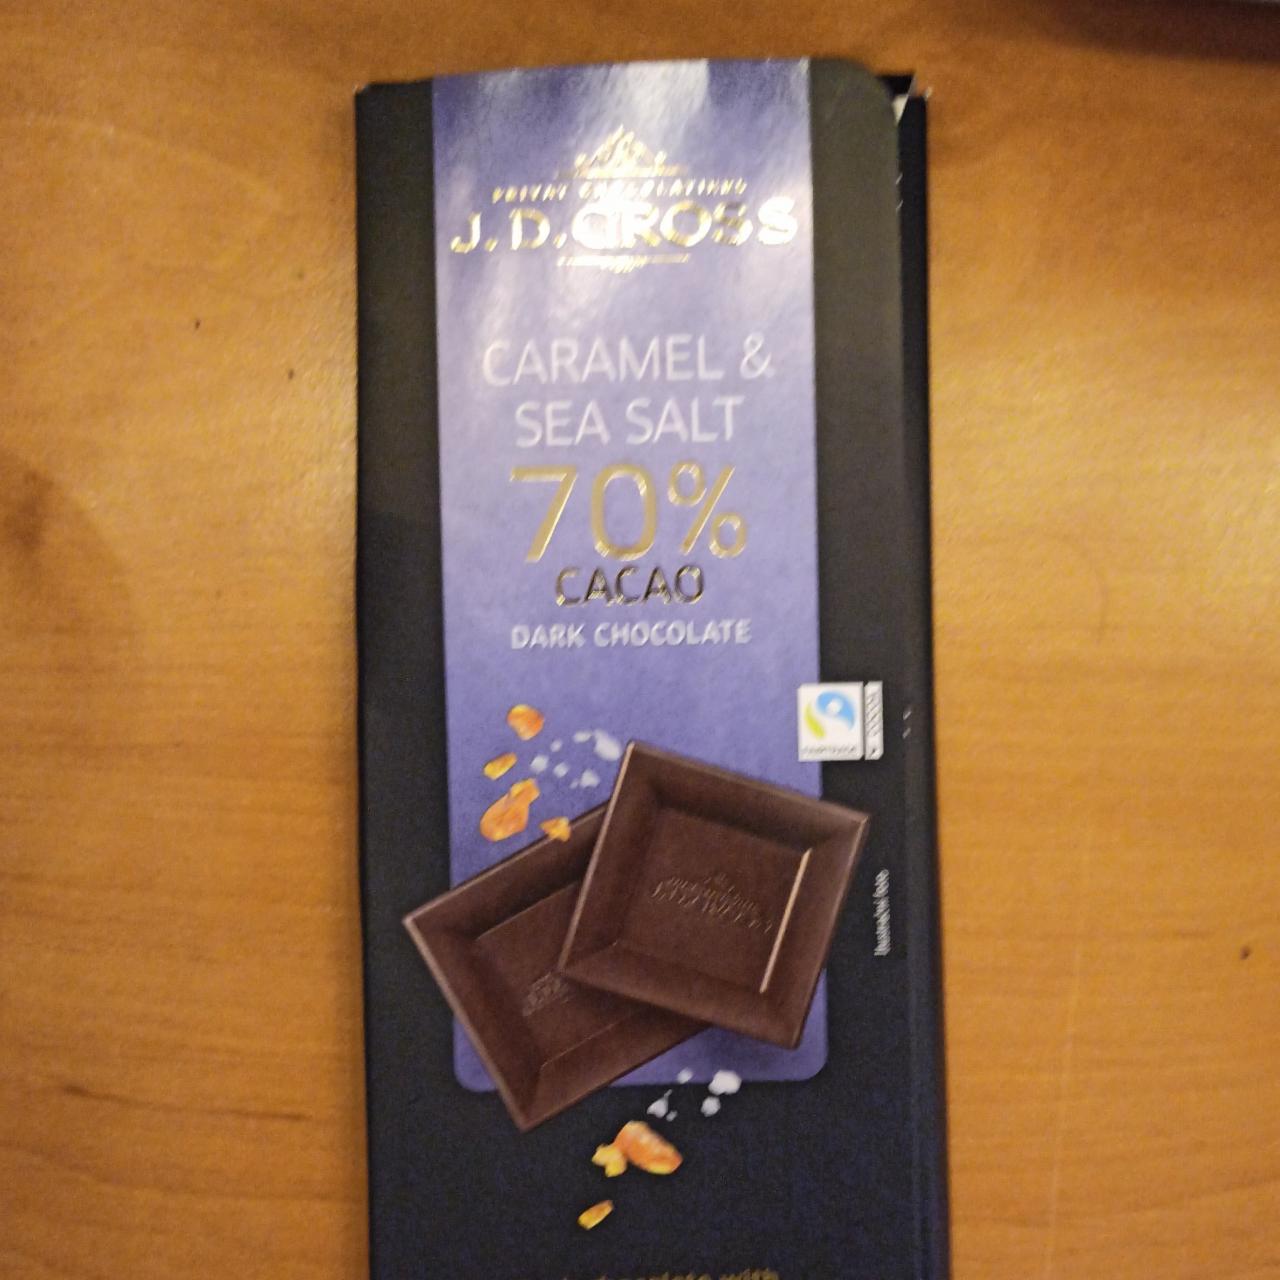 Фото - Шоколад темный карамель и морская соль Dark Chocolate 70% cacao Caramel&Sea Salt J. D. Gross